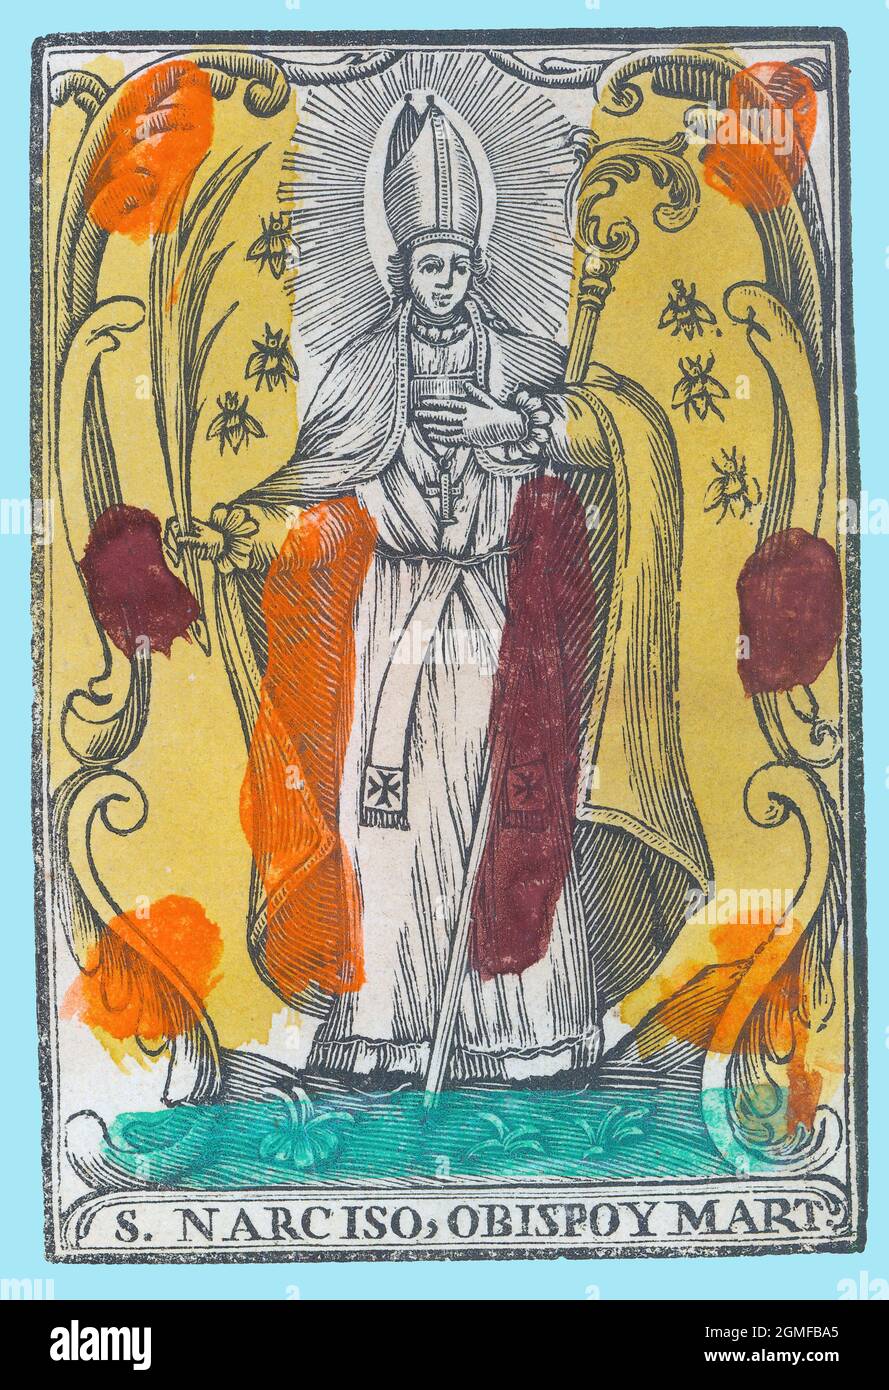 San Narciso (siglo III-307), obispo de Girona y mártir. Estampería popular del siglo XVIII, pintado a mano. Stock Photo